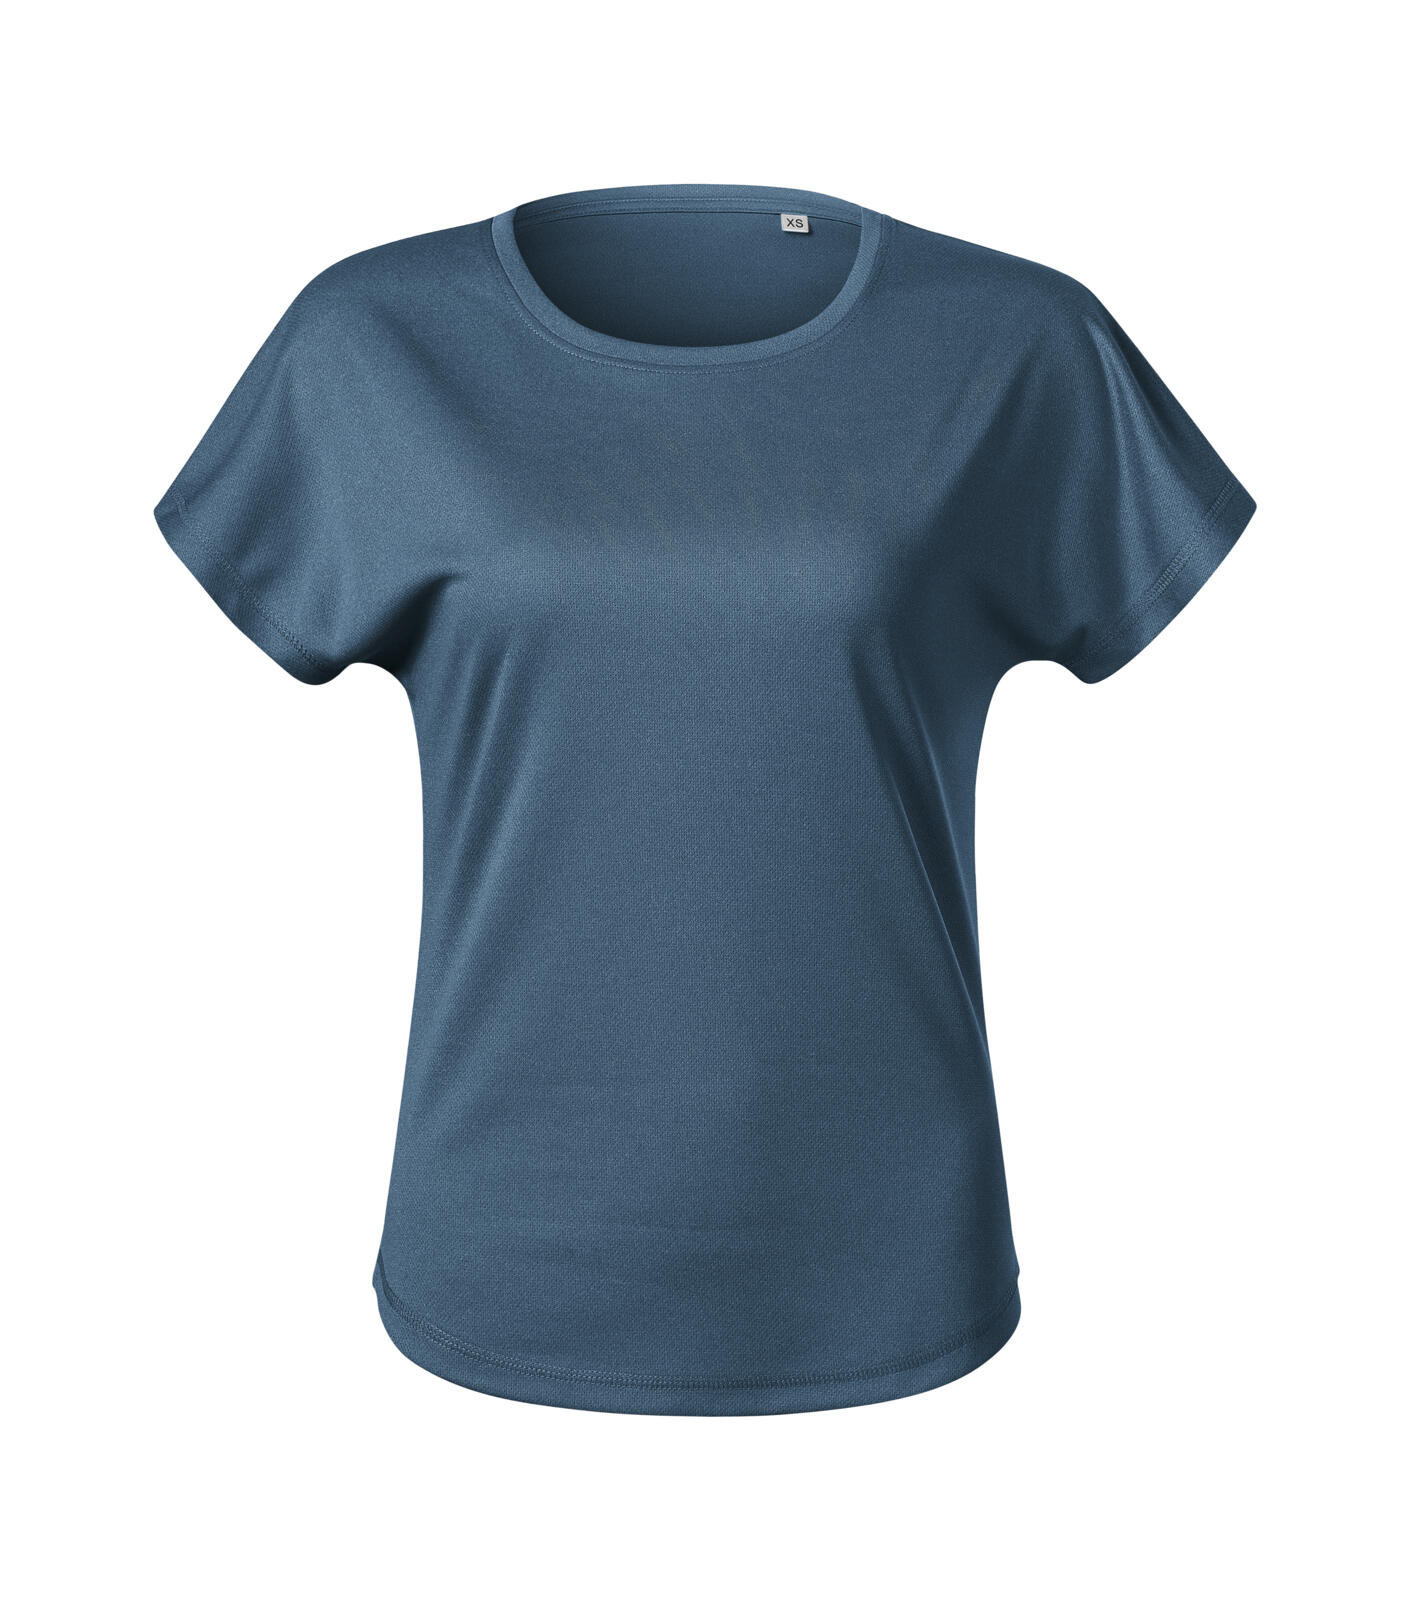 Dámske funkčné tričko Malfini Chance GRS 811 - veľkosť: M, farba: tmavý denim melír